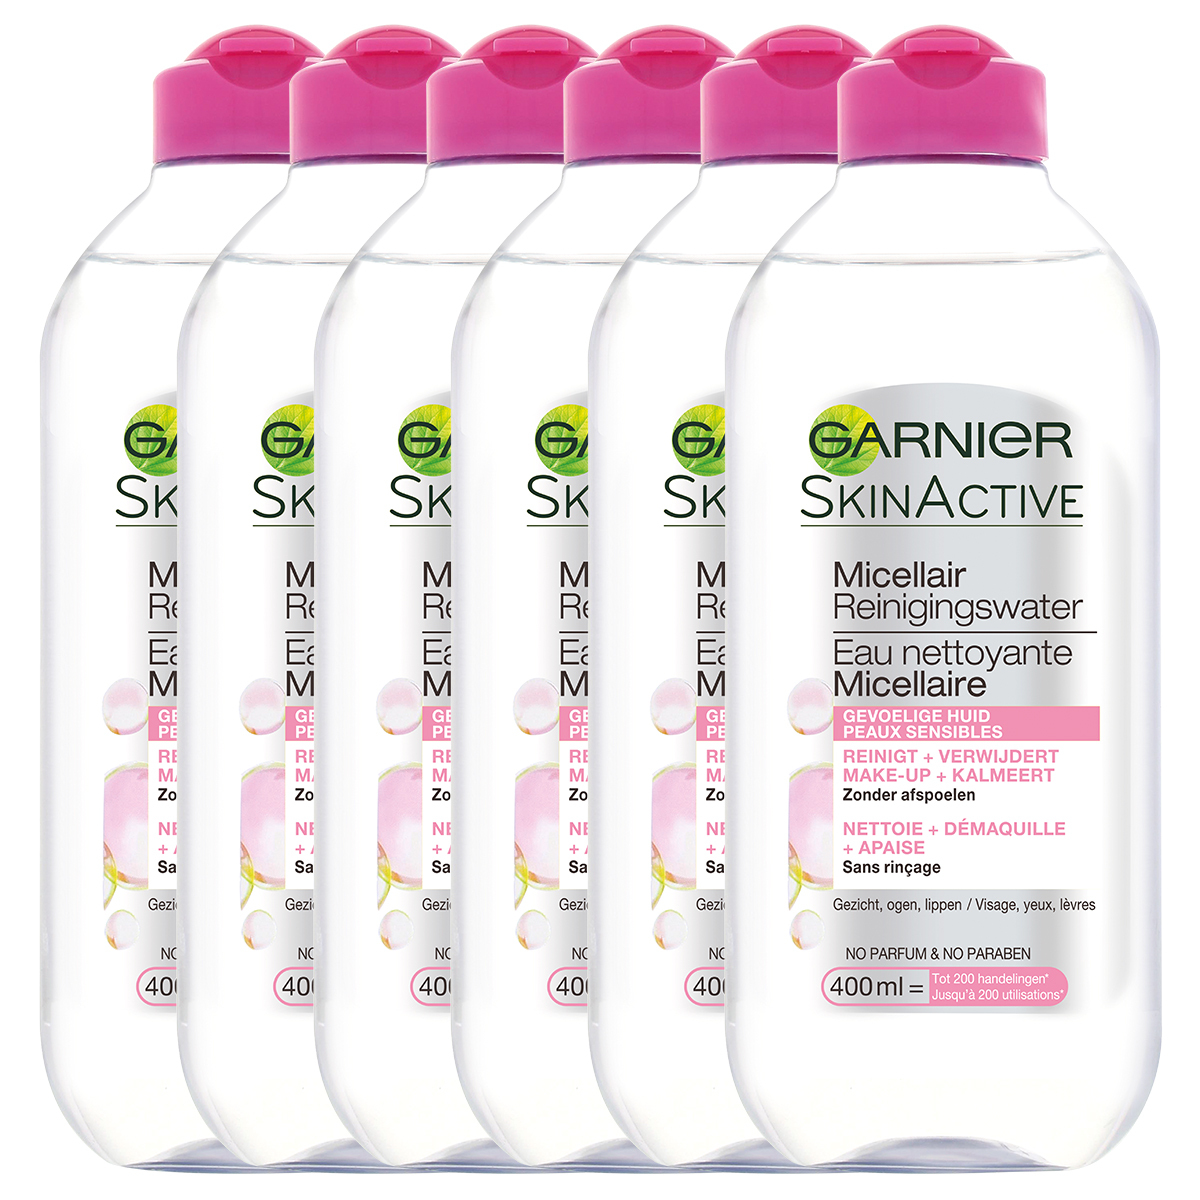 Garnier Skinactive Face SkinActive Micellair Reinigingswater voor de Gevoelige Huid - 6 x 400ml - Voordeelverpakking